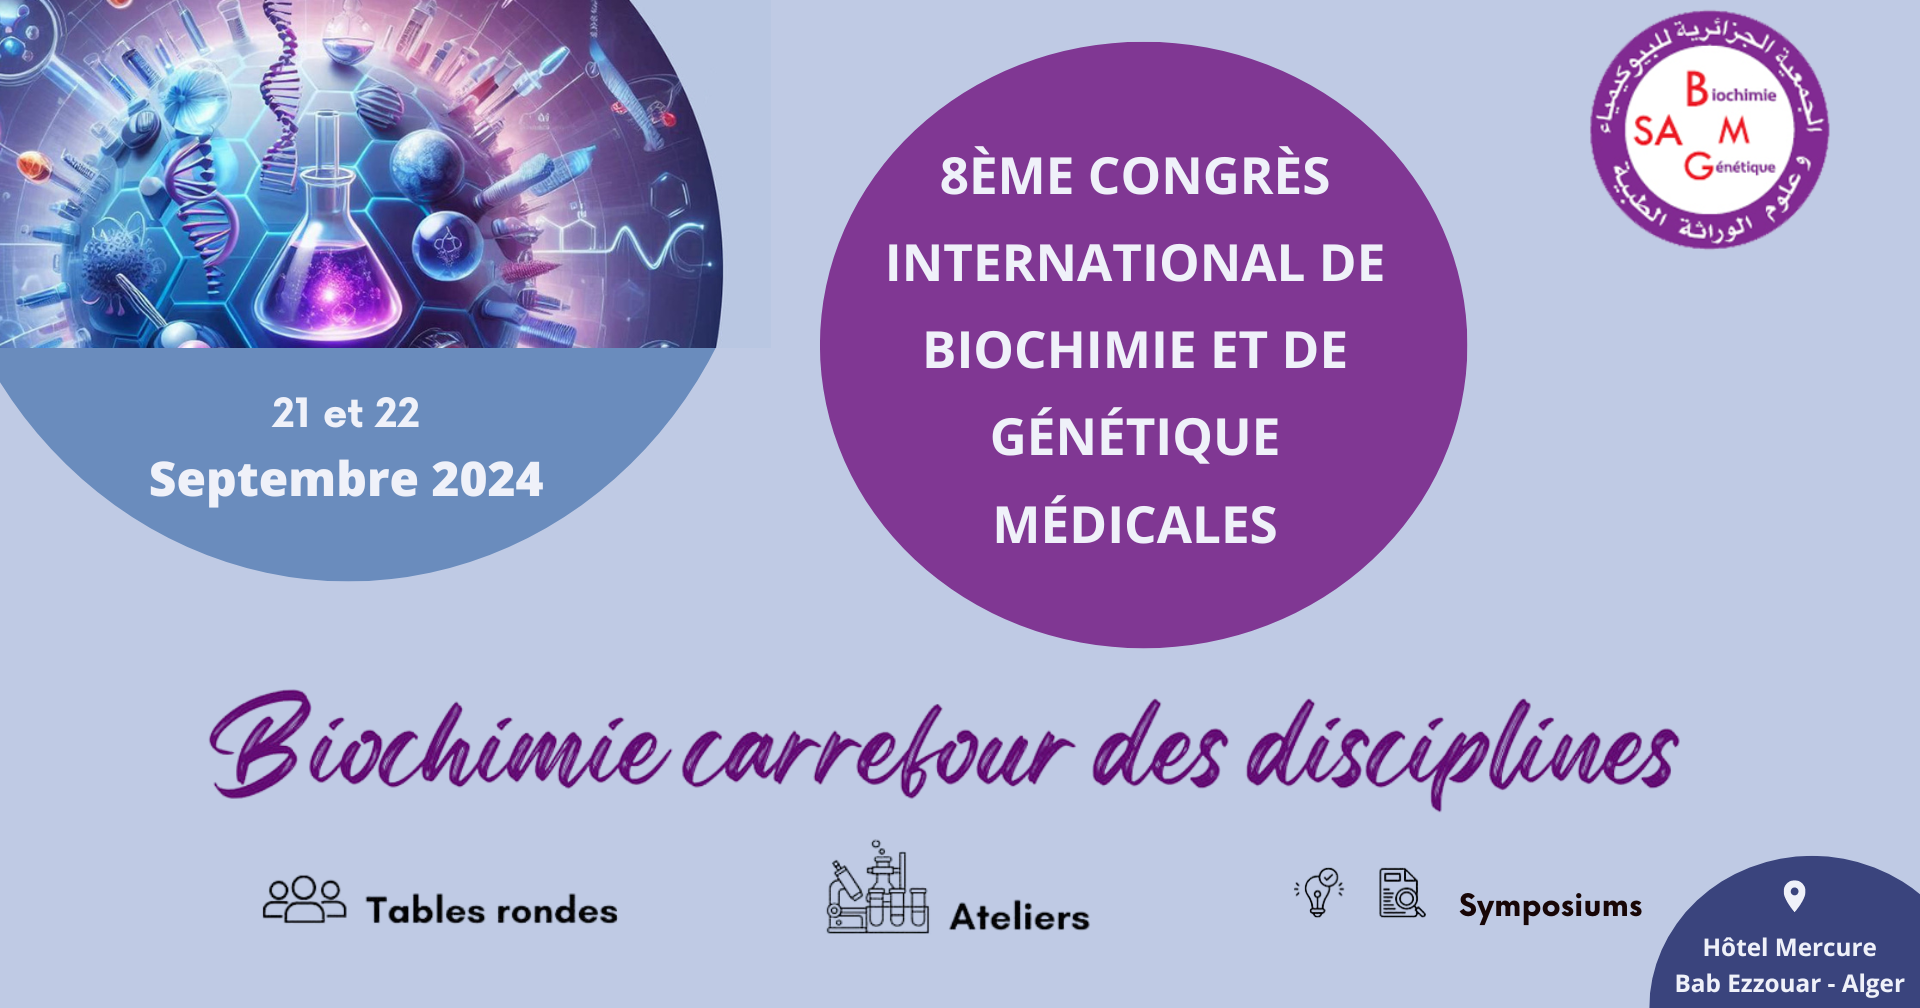 8ème congrès international de biochimie et de génétique médicales -SABGM 2024 cover image